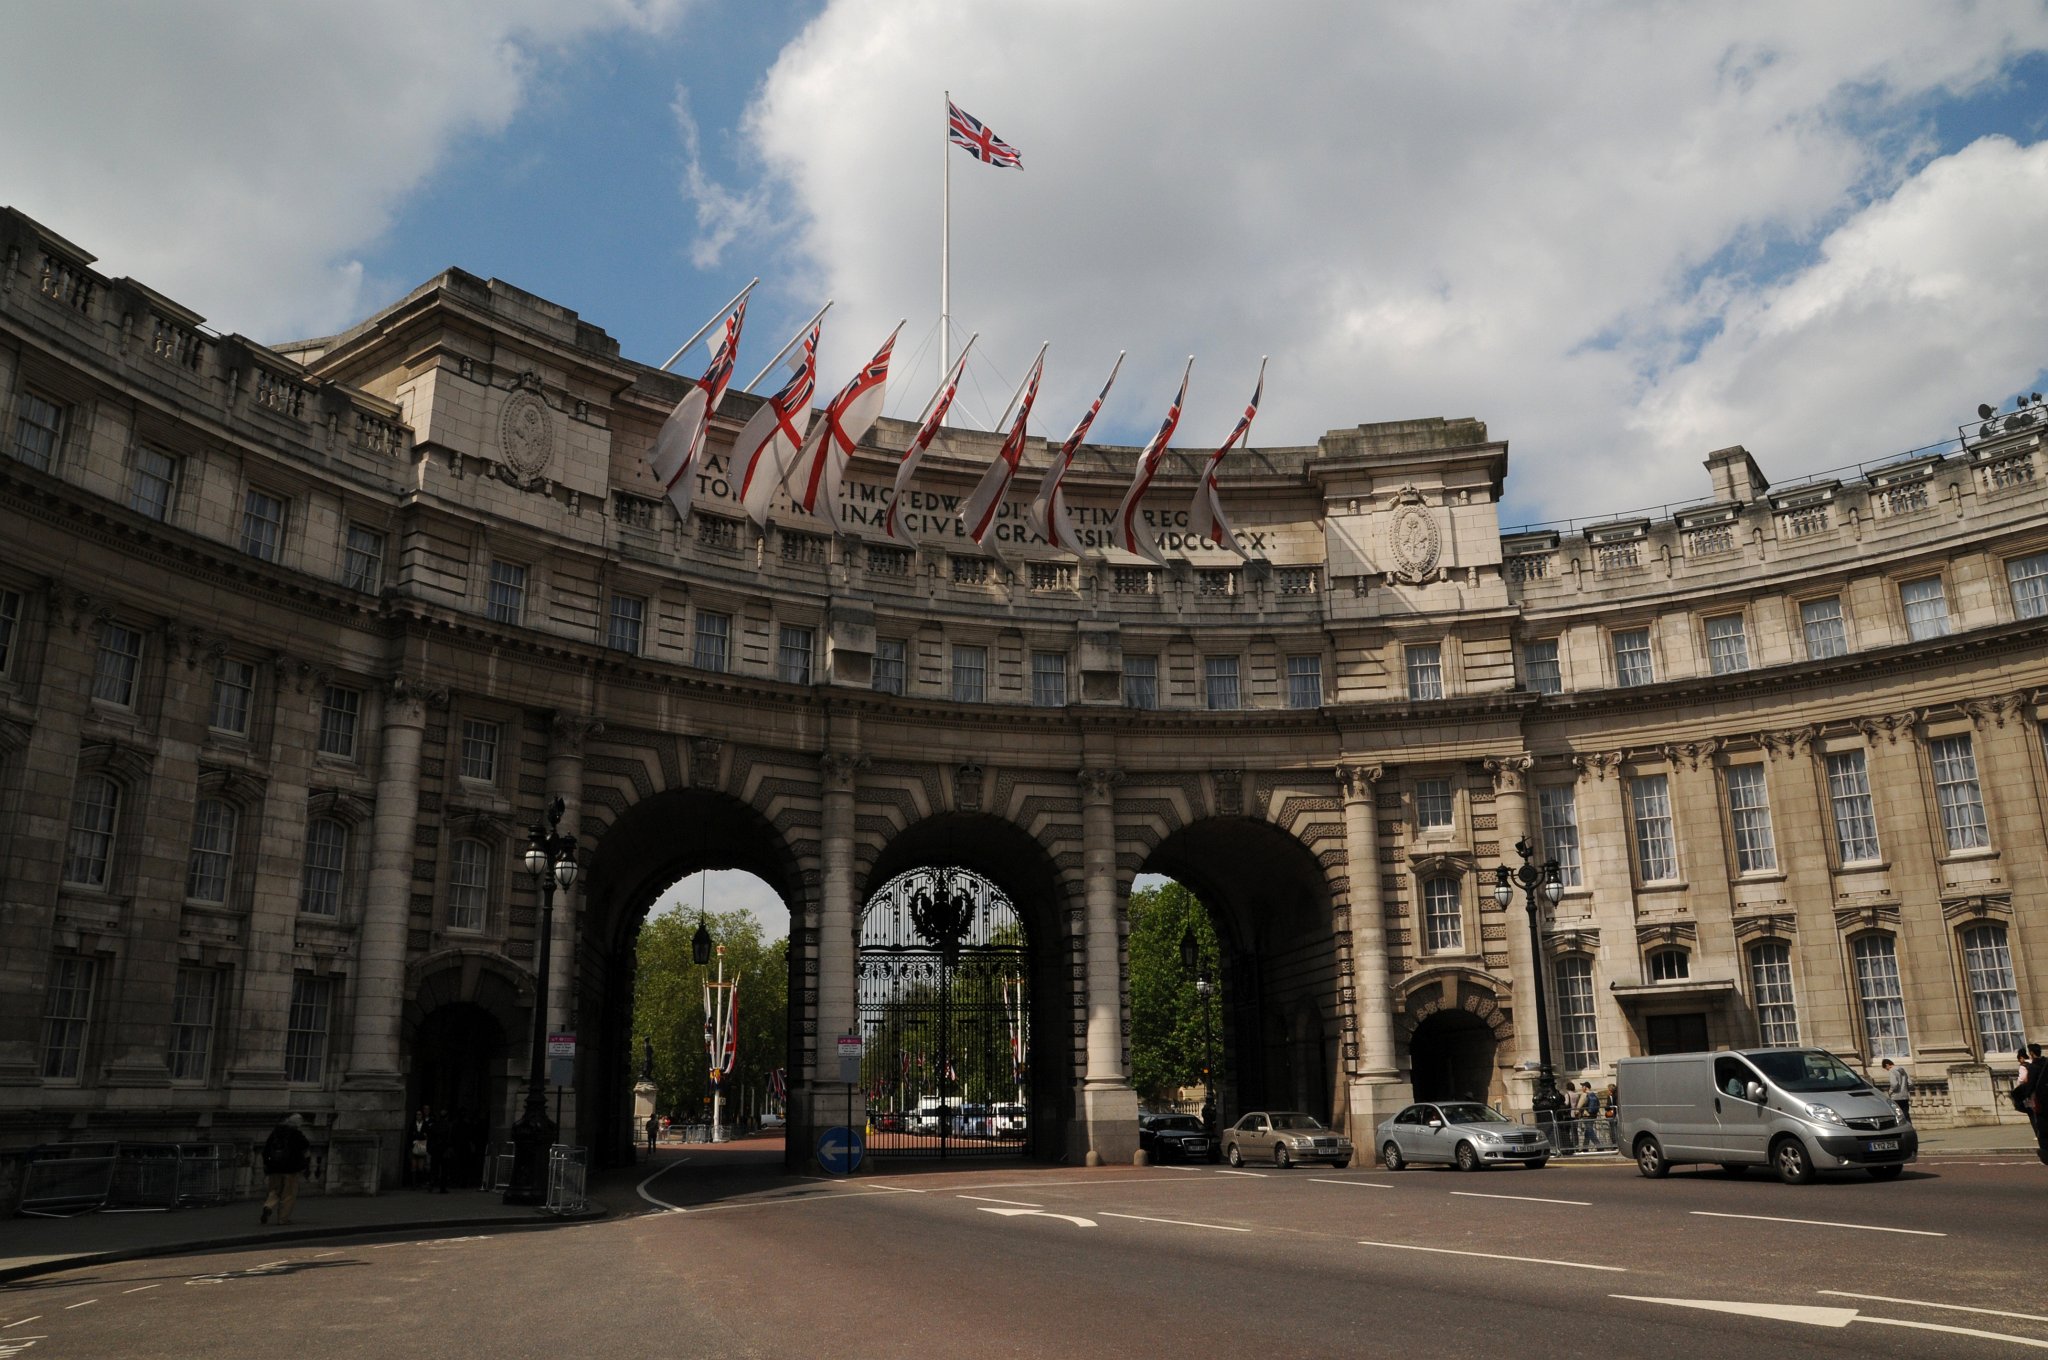 DSC_3856_2.jpg - Admiralty Arch z pohledu od Trafalgarského náměstí (anglicky Trafalgar Square). Toto náměstí je v centru Londýna, které připomíná Bitvu u Trafalgaru roku 1805, vítězství Britského námořnictva v Napoleonských válkách. Náměstí se mělo původně jmenovat Náměstí krále Viléma IV., ale G.L.Taylor navrhl současně používaný název.Od doby Eduarda I. bylo toto území používáno jako královské stáje. Okolo roku 1820 princ regent pověřil architekta Johna Nashe obnovou této oblasti. Nash nechal vyčistit toto území jako část zušlechtění oblasti Charing Cross. Současný vzhled náměstí pochází z období okolo roku 1845 a je dílem architekta Charlese Barryho.